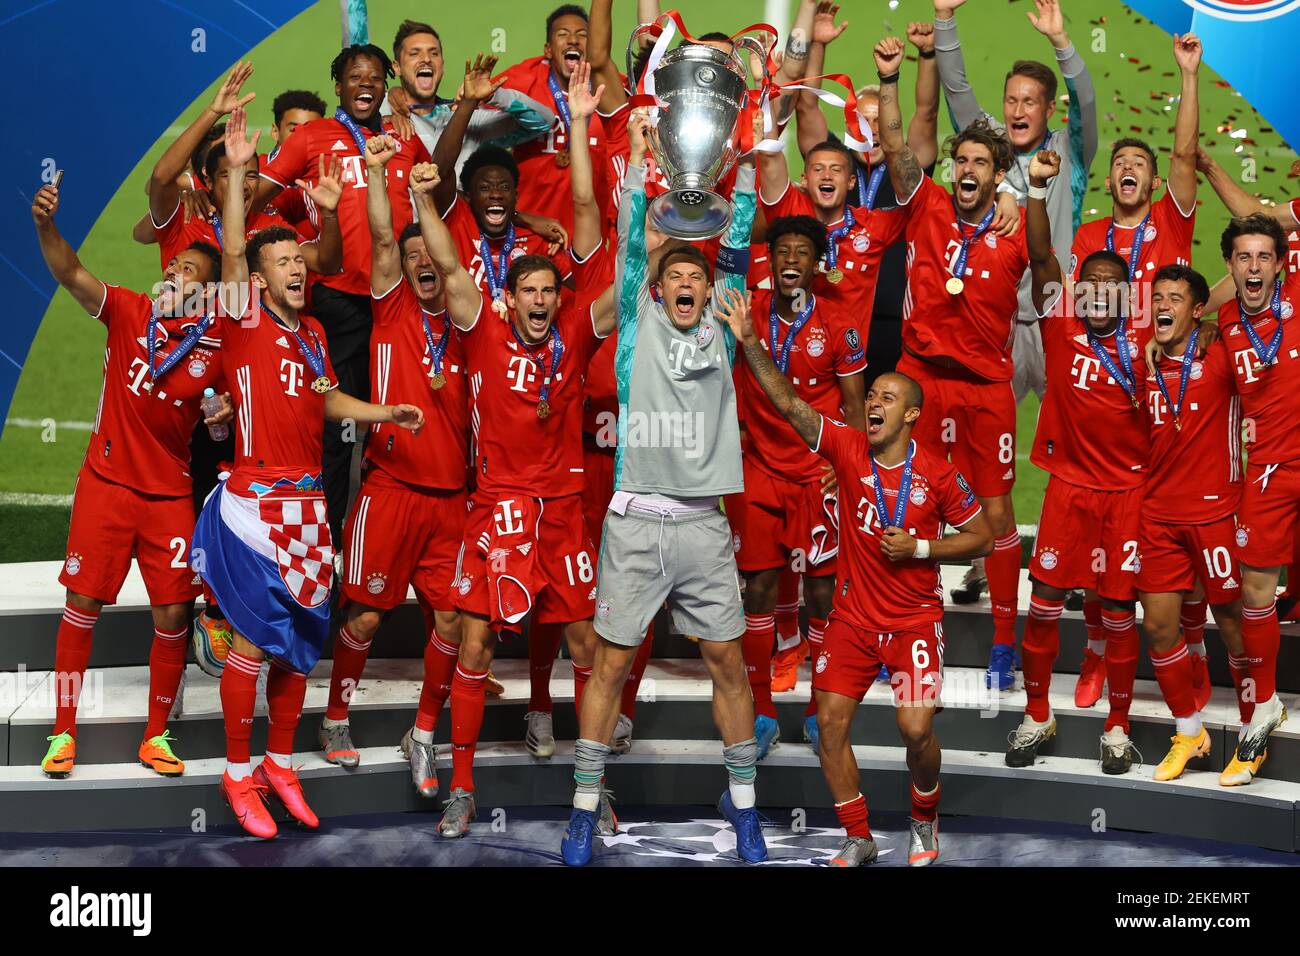 LISBONA, PORTOGALLO - 23 AGOSTO: Manuel Neuer, capitano dell'FC Bayern  Monaco, solleva il Trofeo UEFA Champions League dopo la vittoria del suo  team nell'UEFA Champions League Final match tra Parigi Saint-Germain e